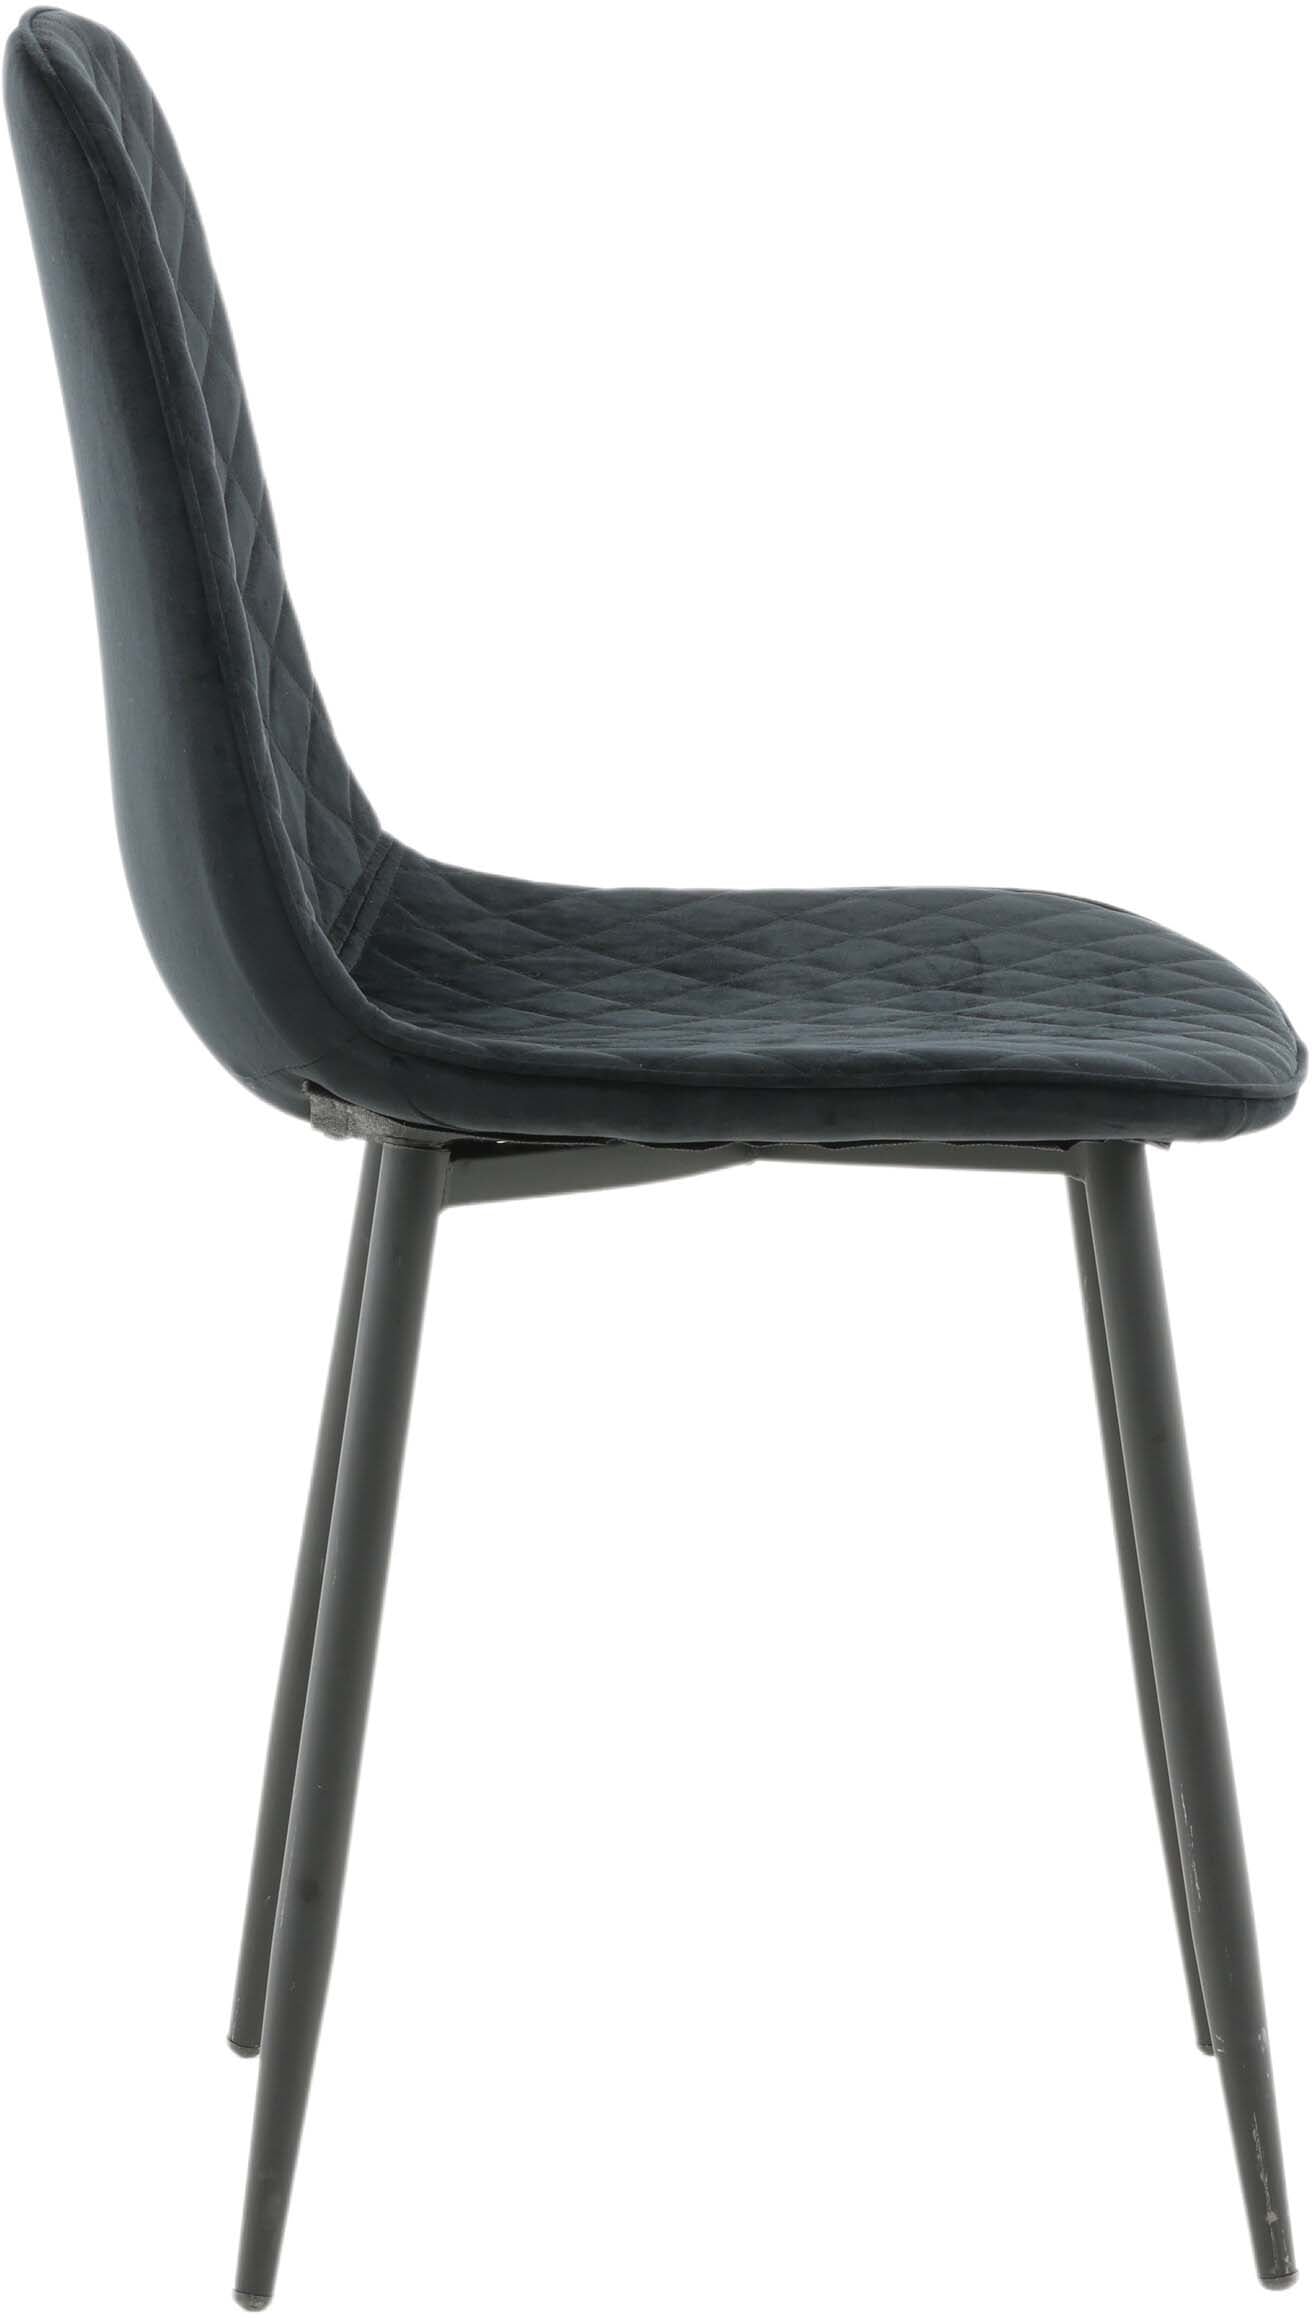 Polar Diamond Stuhl in Schwarz/Schwarz präsentiert im Onlineshop von KAQTU Design AG. Stuhl ist von Venture Home